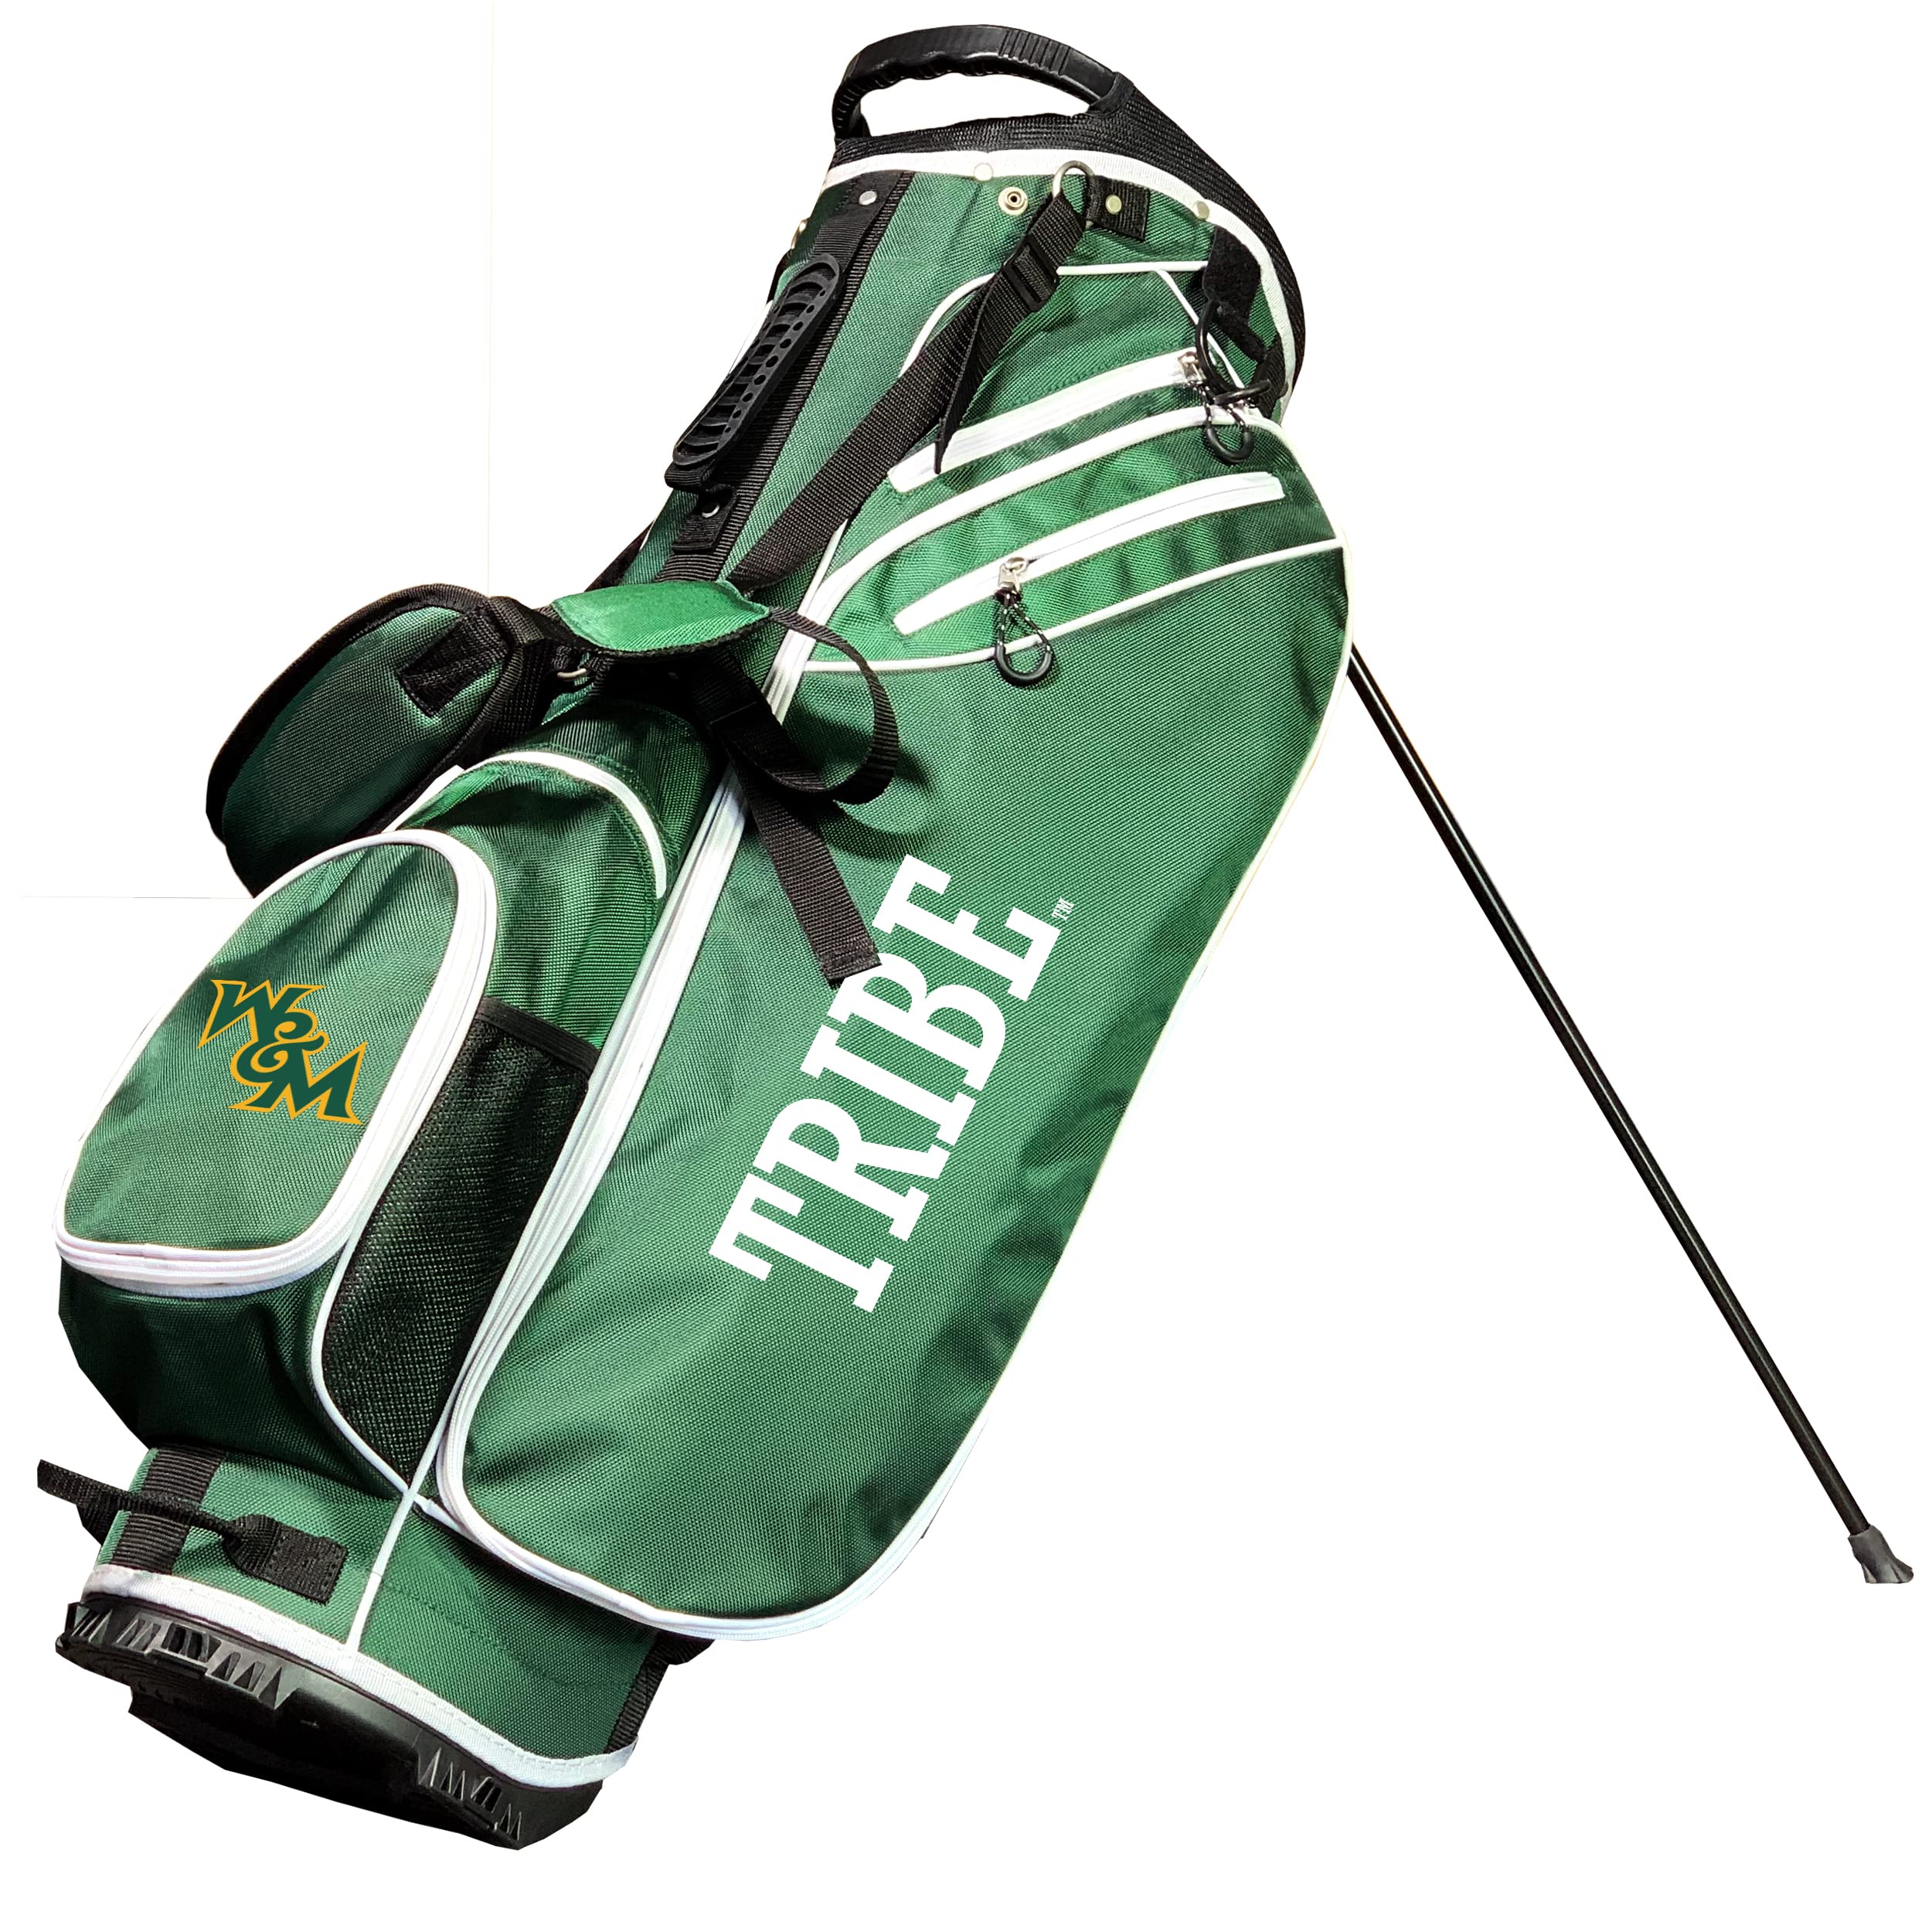 Team golf NcAA Birdie Stand golf Bag, Lightweight, 14-Way club Divider, Spring Action Stand, Velcro glove and Umbrella Holder & 